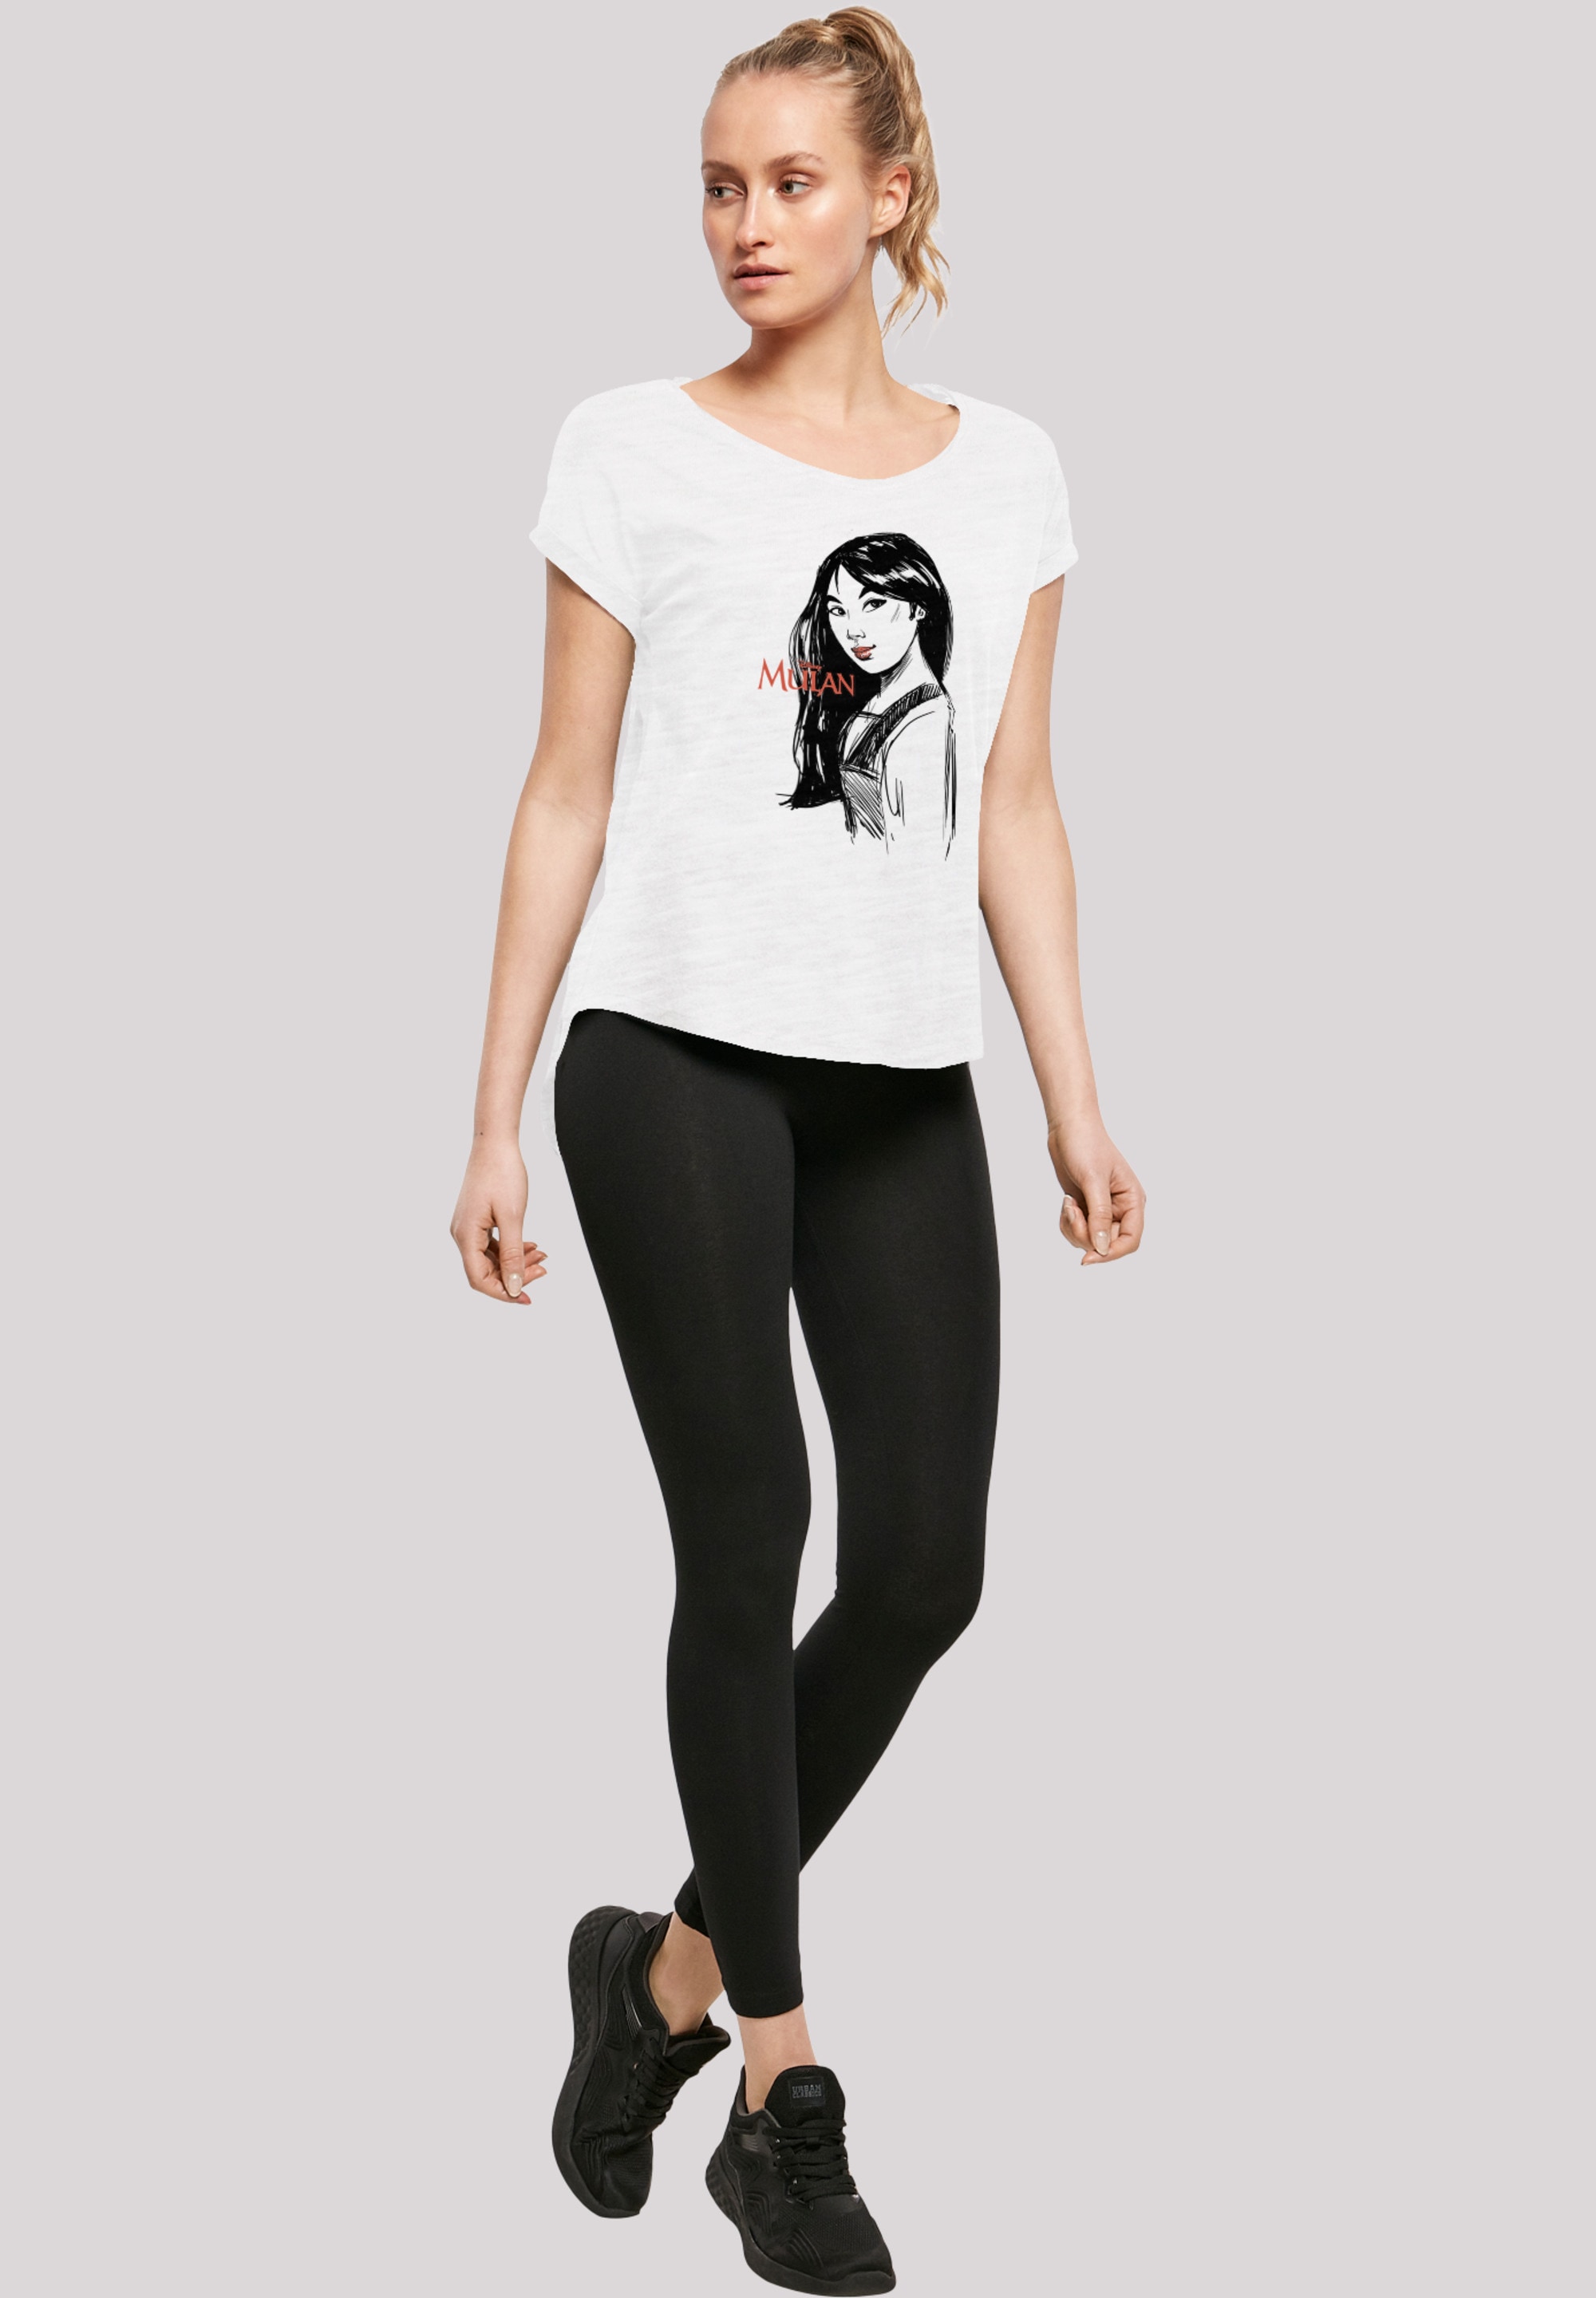 Sketch«, BAUR T-Shirt | für »Mulan F4NT4STIC Damen,Premium Merch,Lang,Longshirt, Bedruckt kaufen